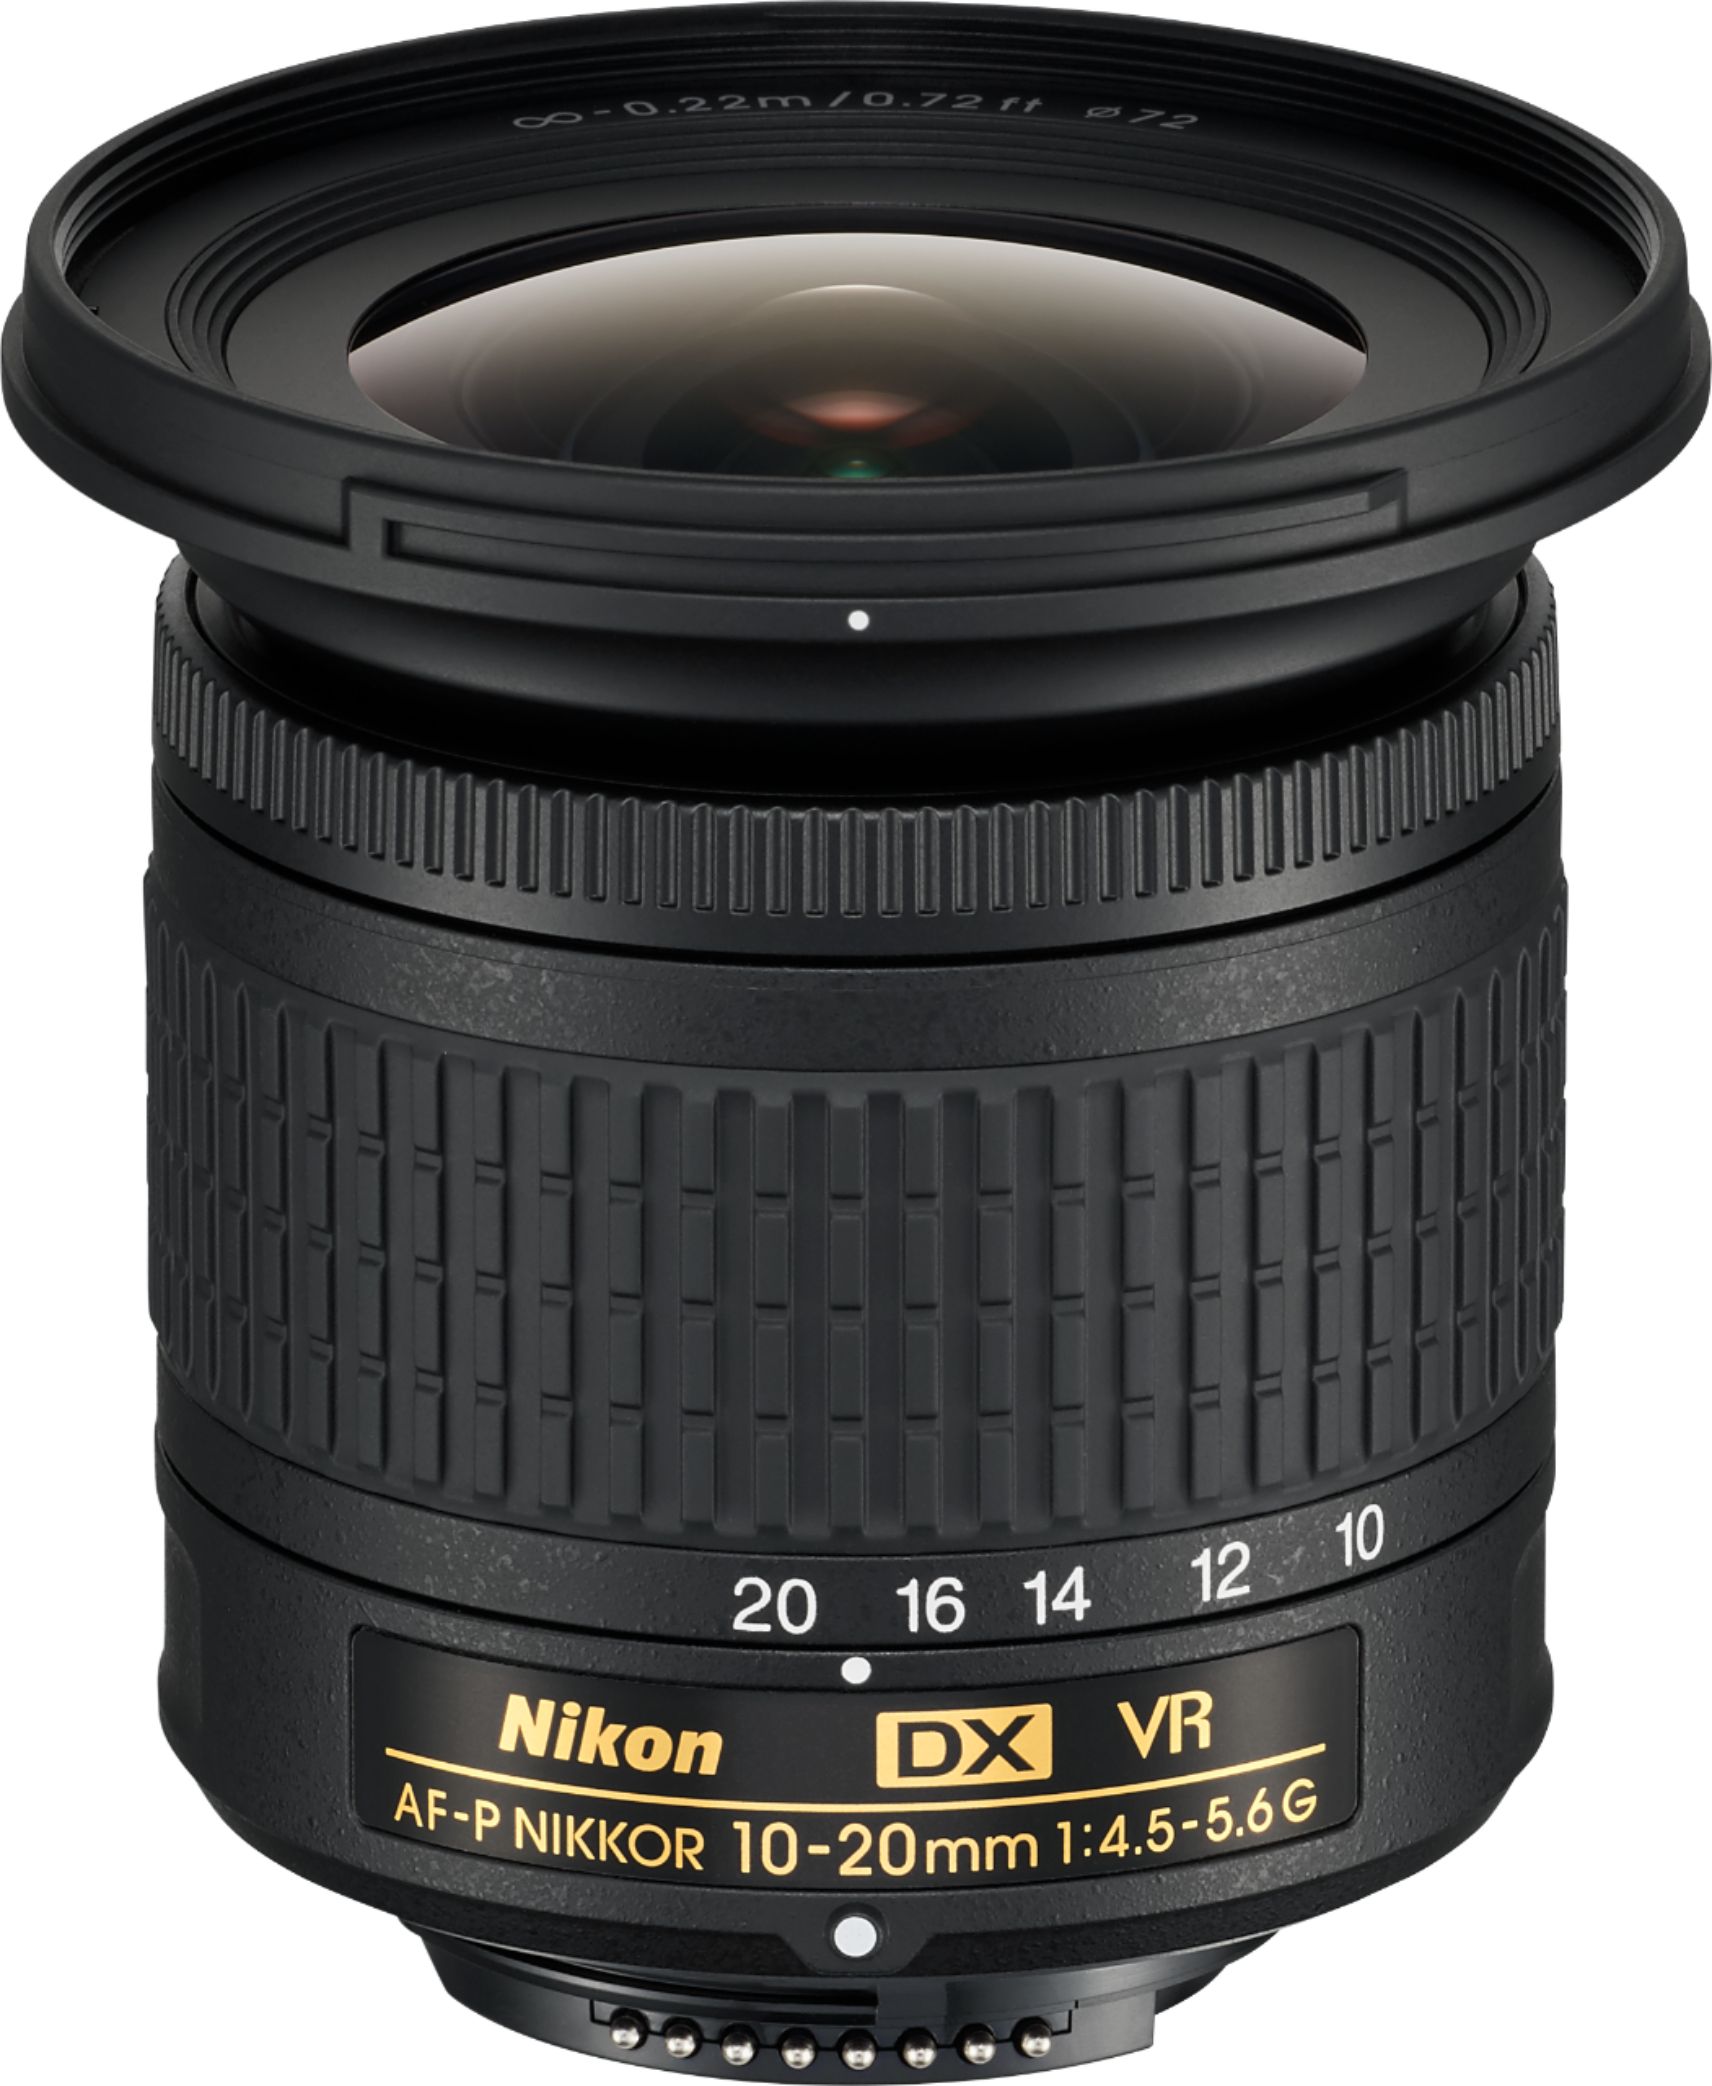 Nikon AF-P DX NIKKOR 10-20mm f/4.5-5.6G VR Wide-Angle Zoom Lens